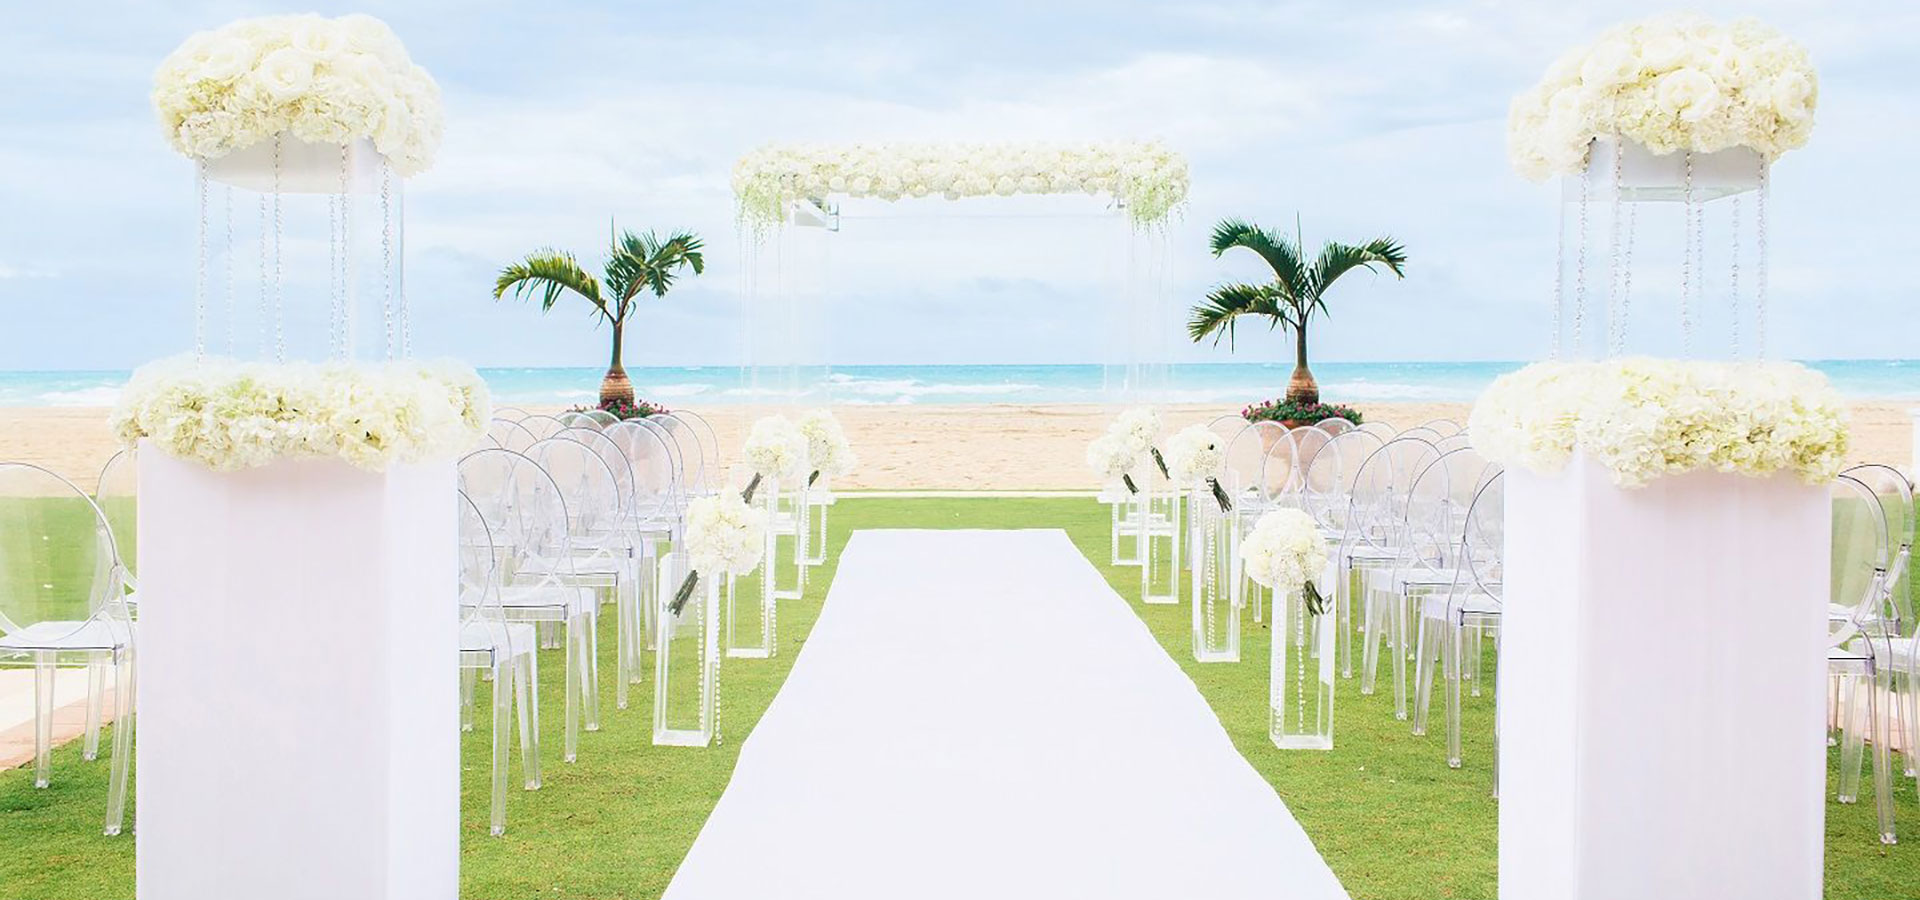 Acqualina wedding ceremony setup facing the beach